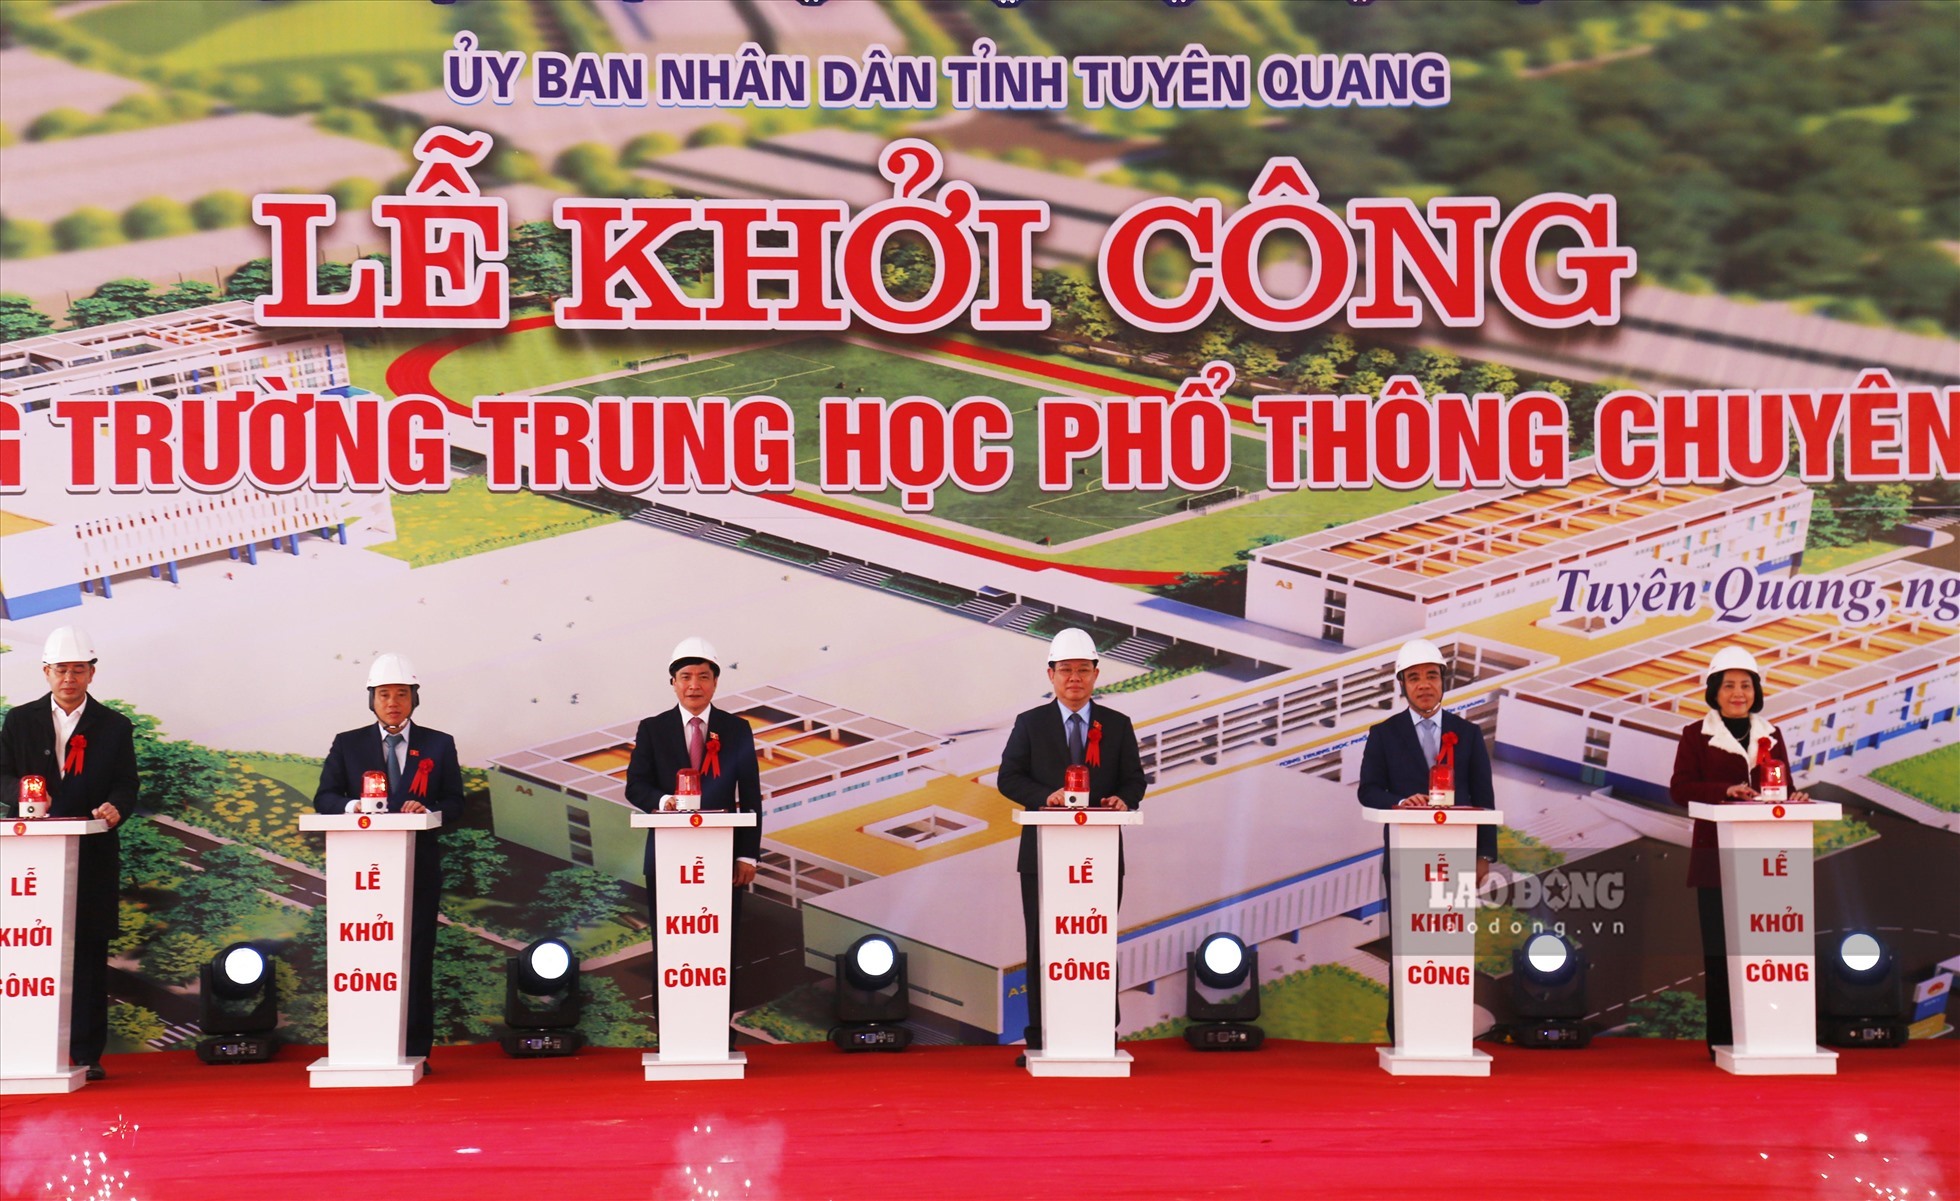 Chủ tịch Quốc hội Vương Đình Huệ tham dự Lễ khởi công trường THPT chuyên Tuyên Quang.